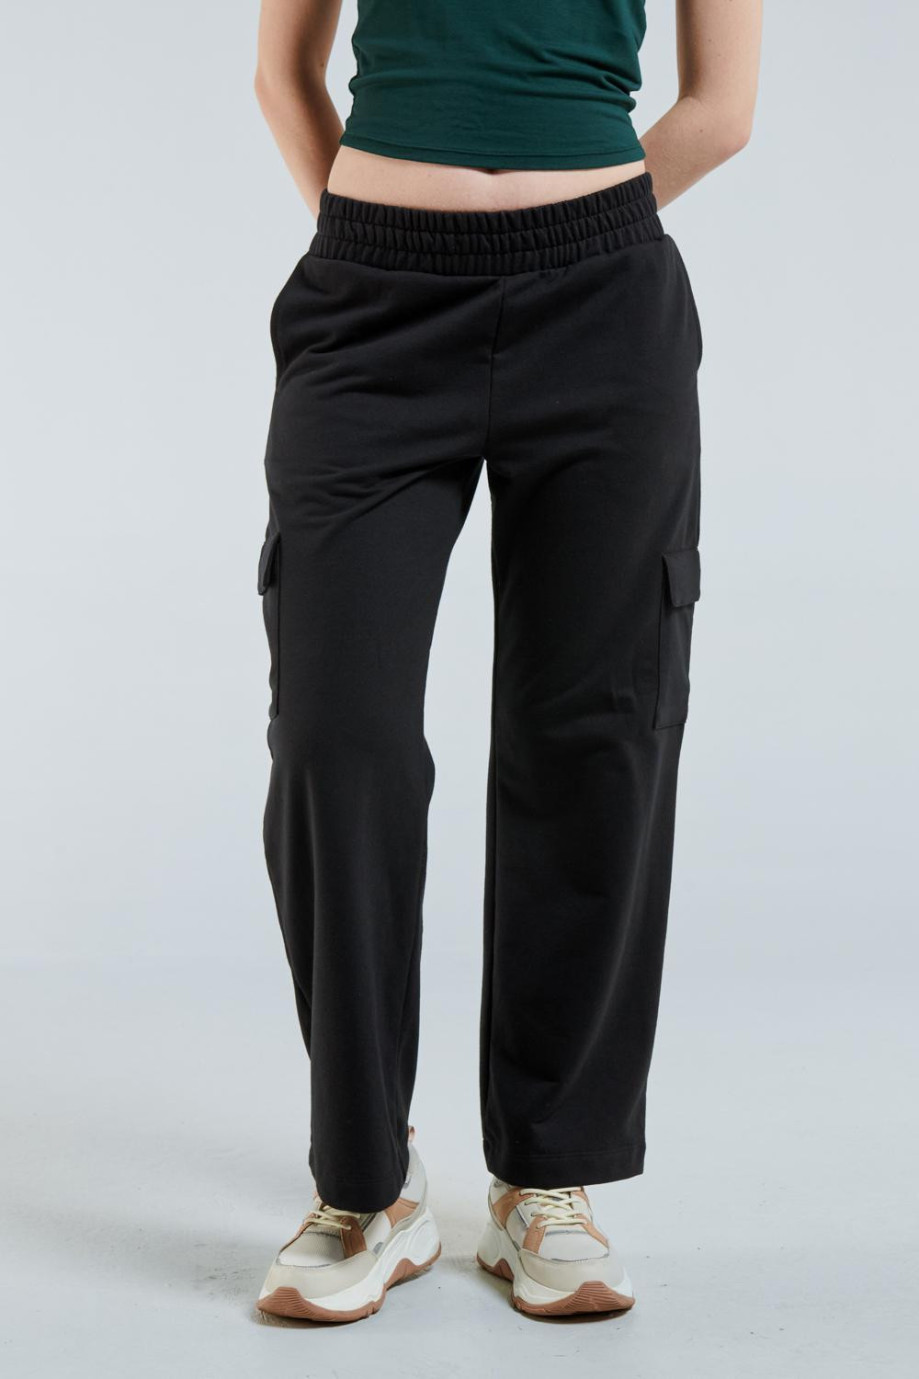 Pantalon jogger cargo bota recta, unicolor, con bolsillos en costados.